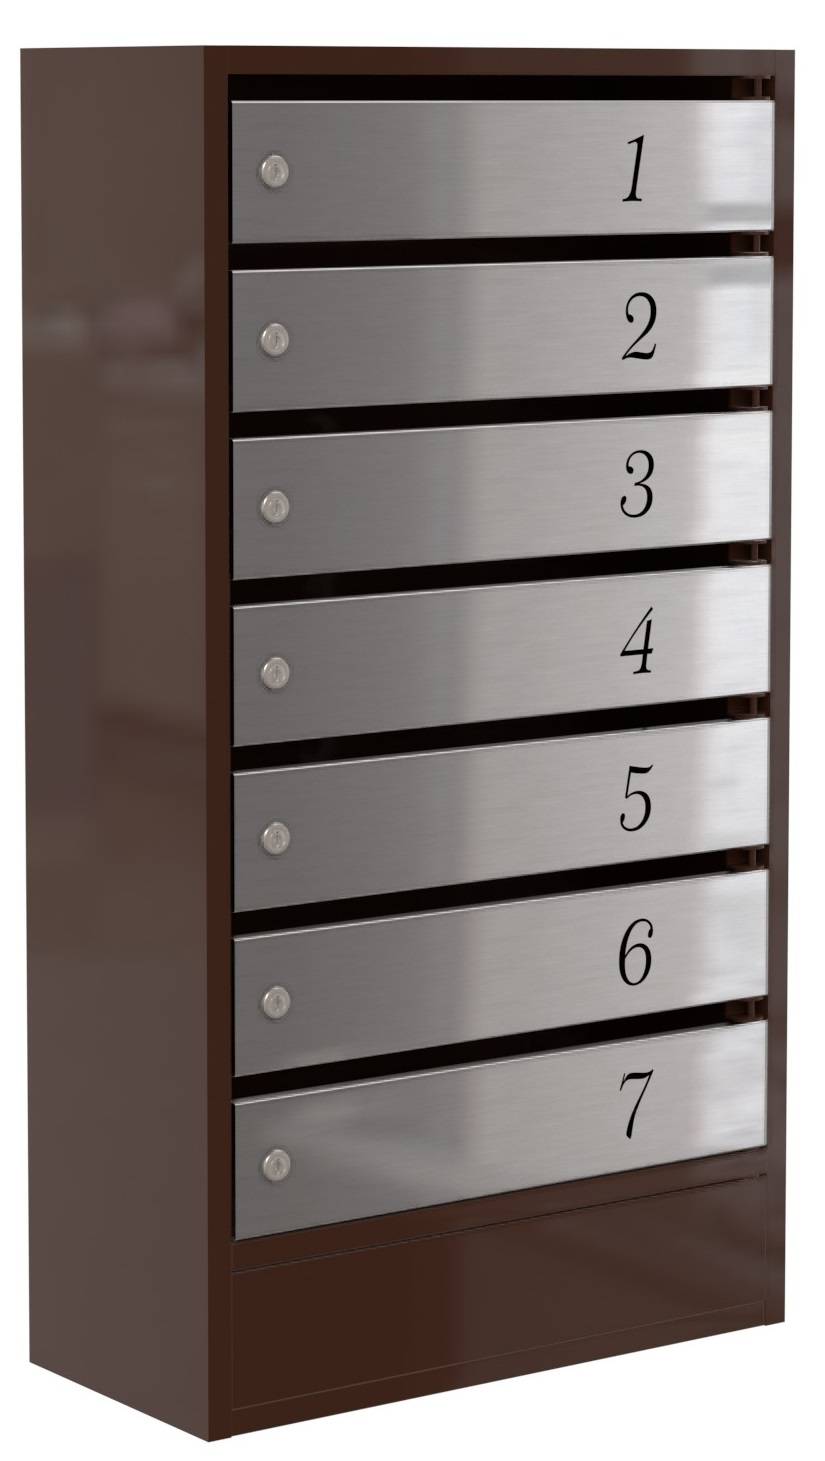 Почтовый ящик Практик-7, 7 секций с дверками из нержавейки для корреспонденции компаний